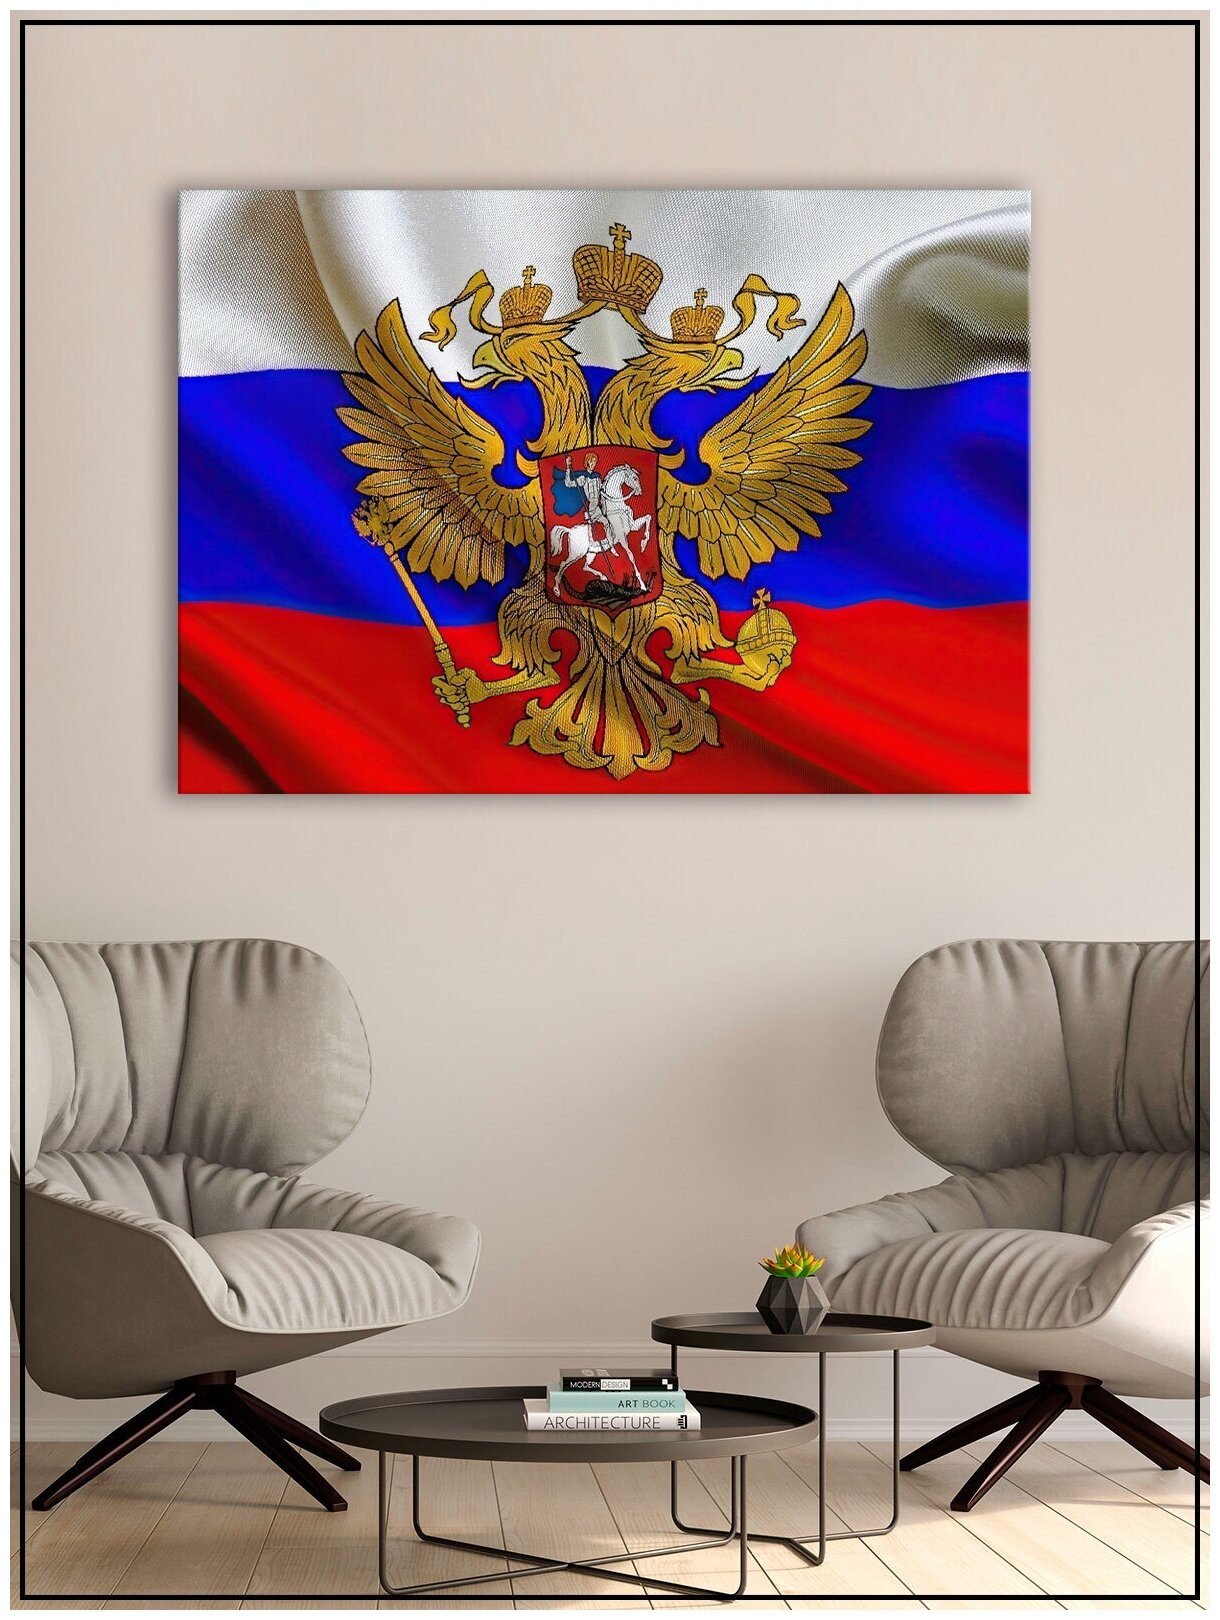 Картина для интерьера на натуральном хлопковом холсте "Флаг России", 38*55см, холст на подрамнике, картина в подарок для дома